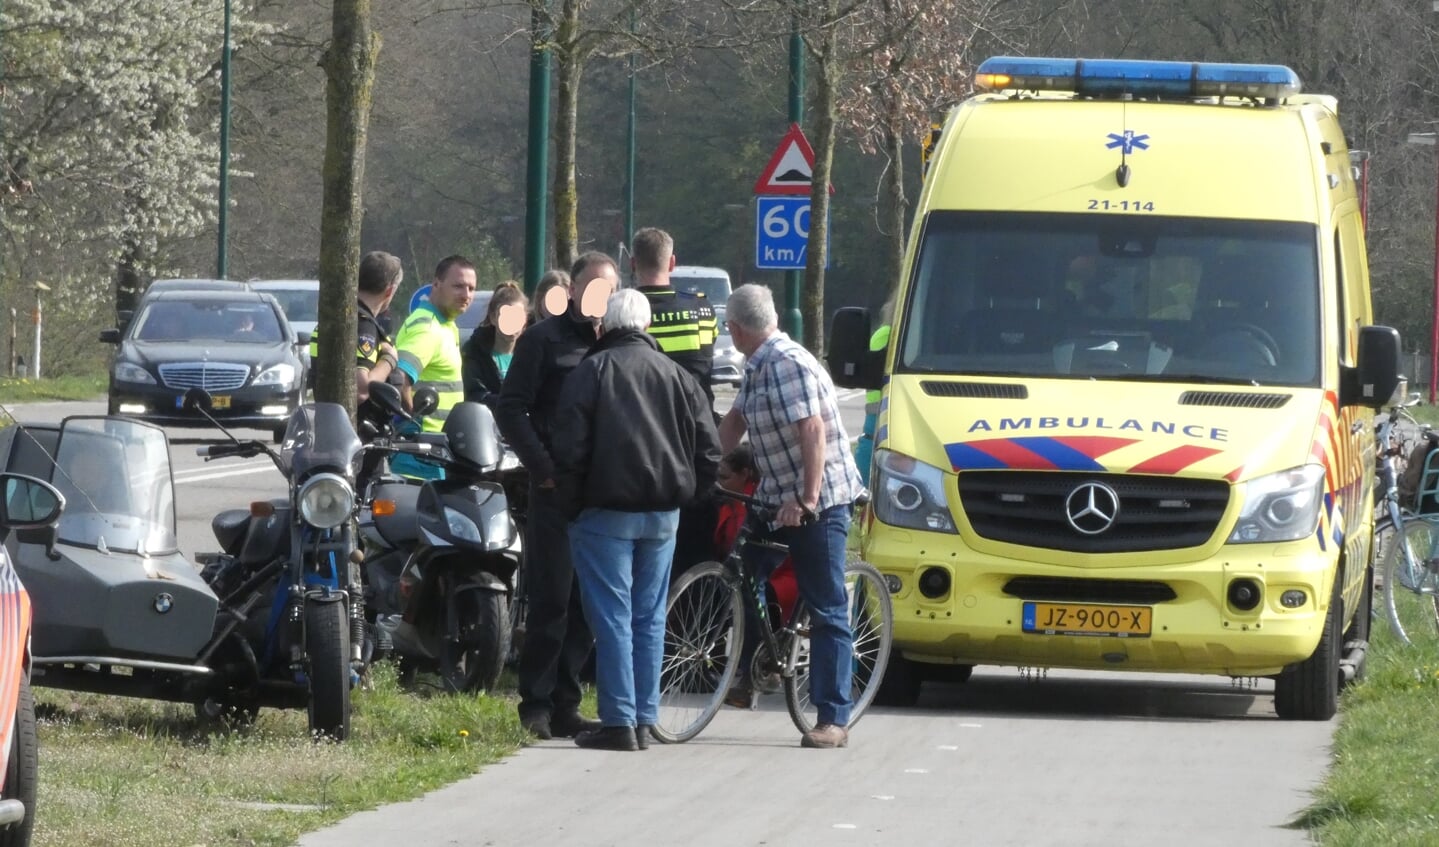 Ongeval tussen scooter en fietsers in Heesch. (Foto: Thomas)